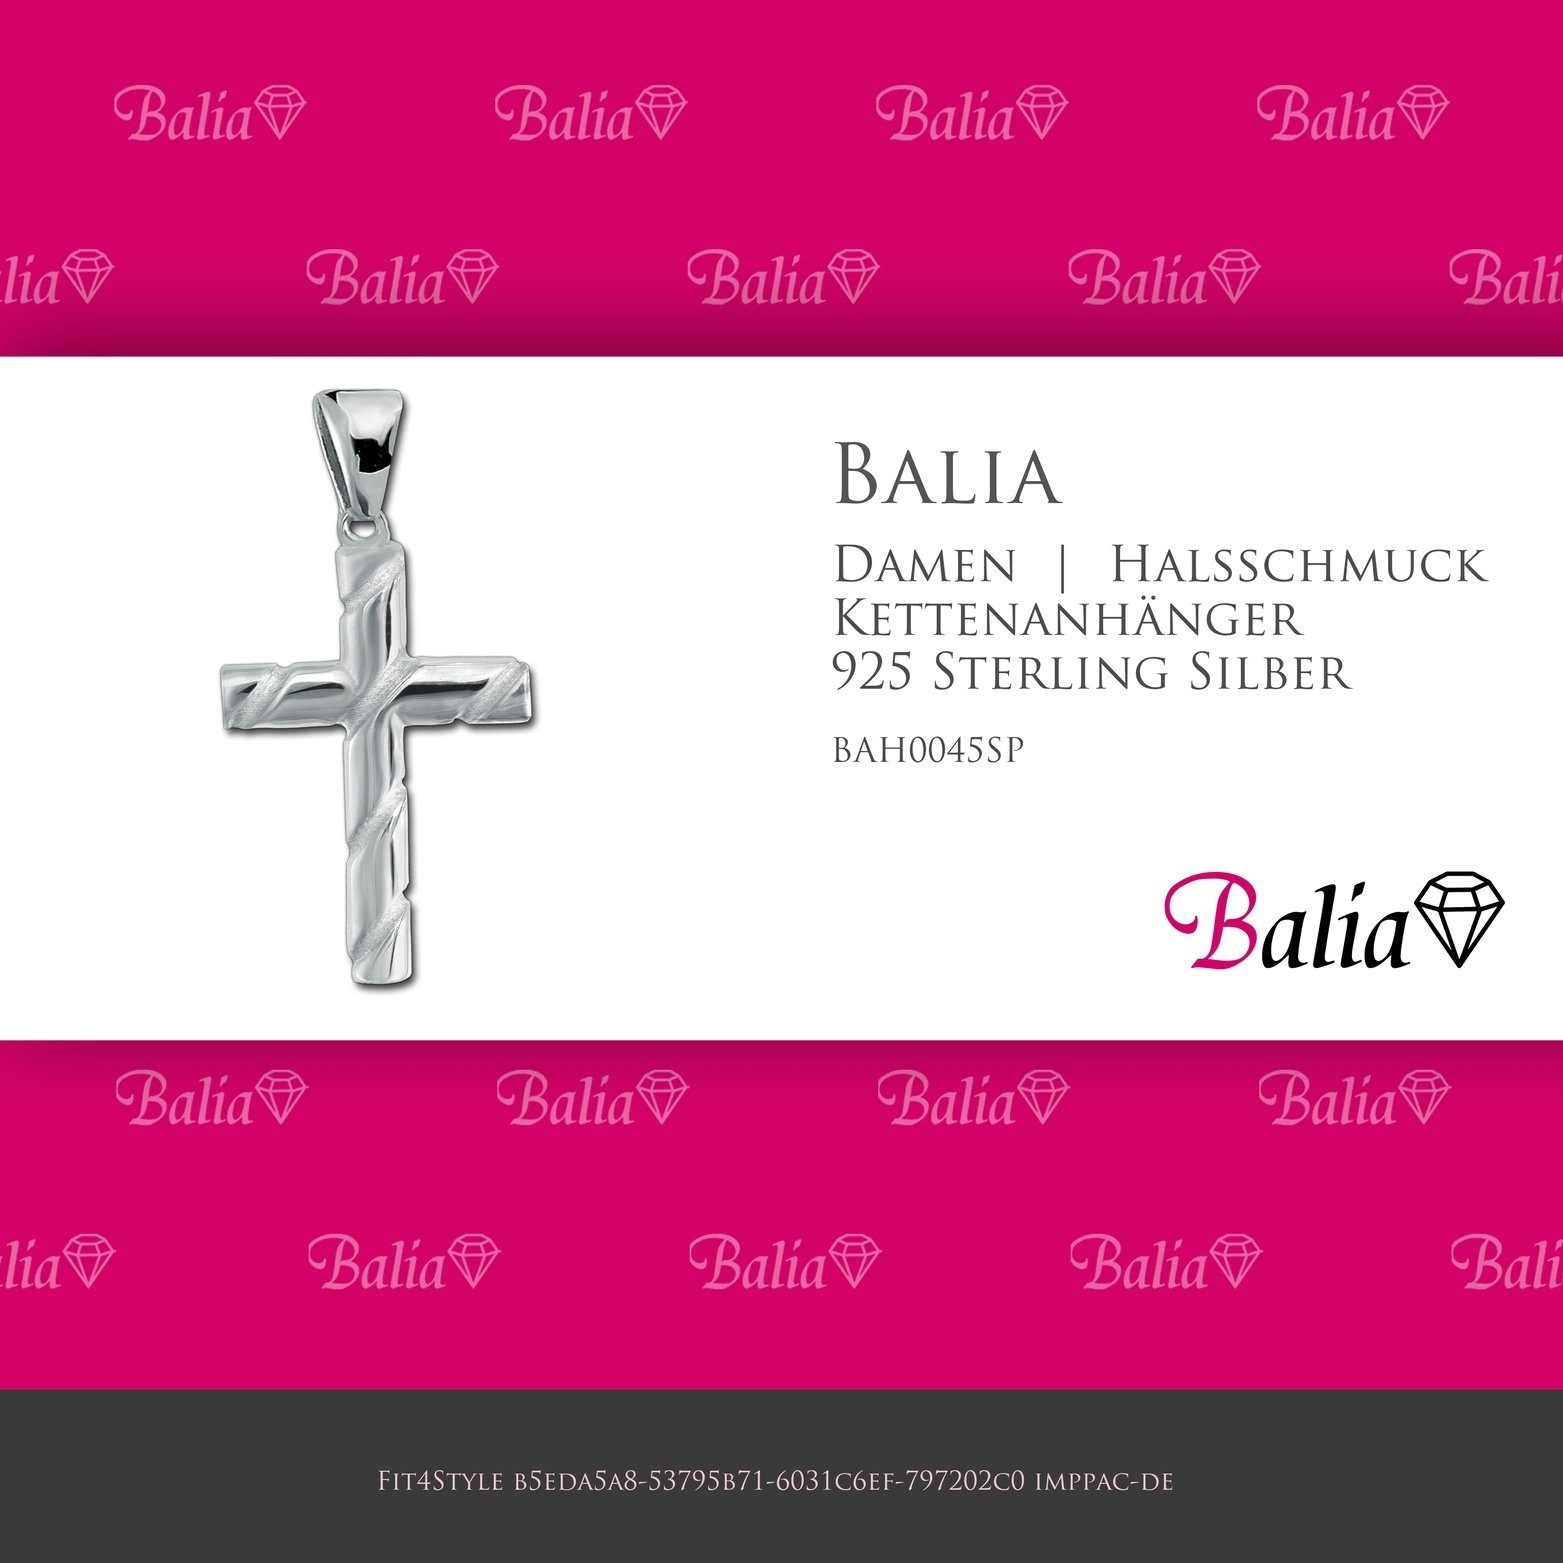 Sterling Kettenanhänger Kettenanhänger 925 3cm, (Kreuz) Damen 925, Silber für Kettenanhänger Balia Balia ca.